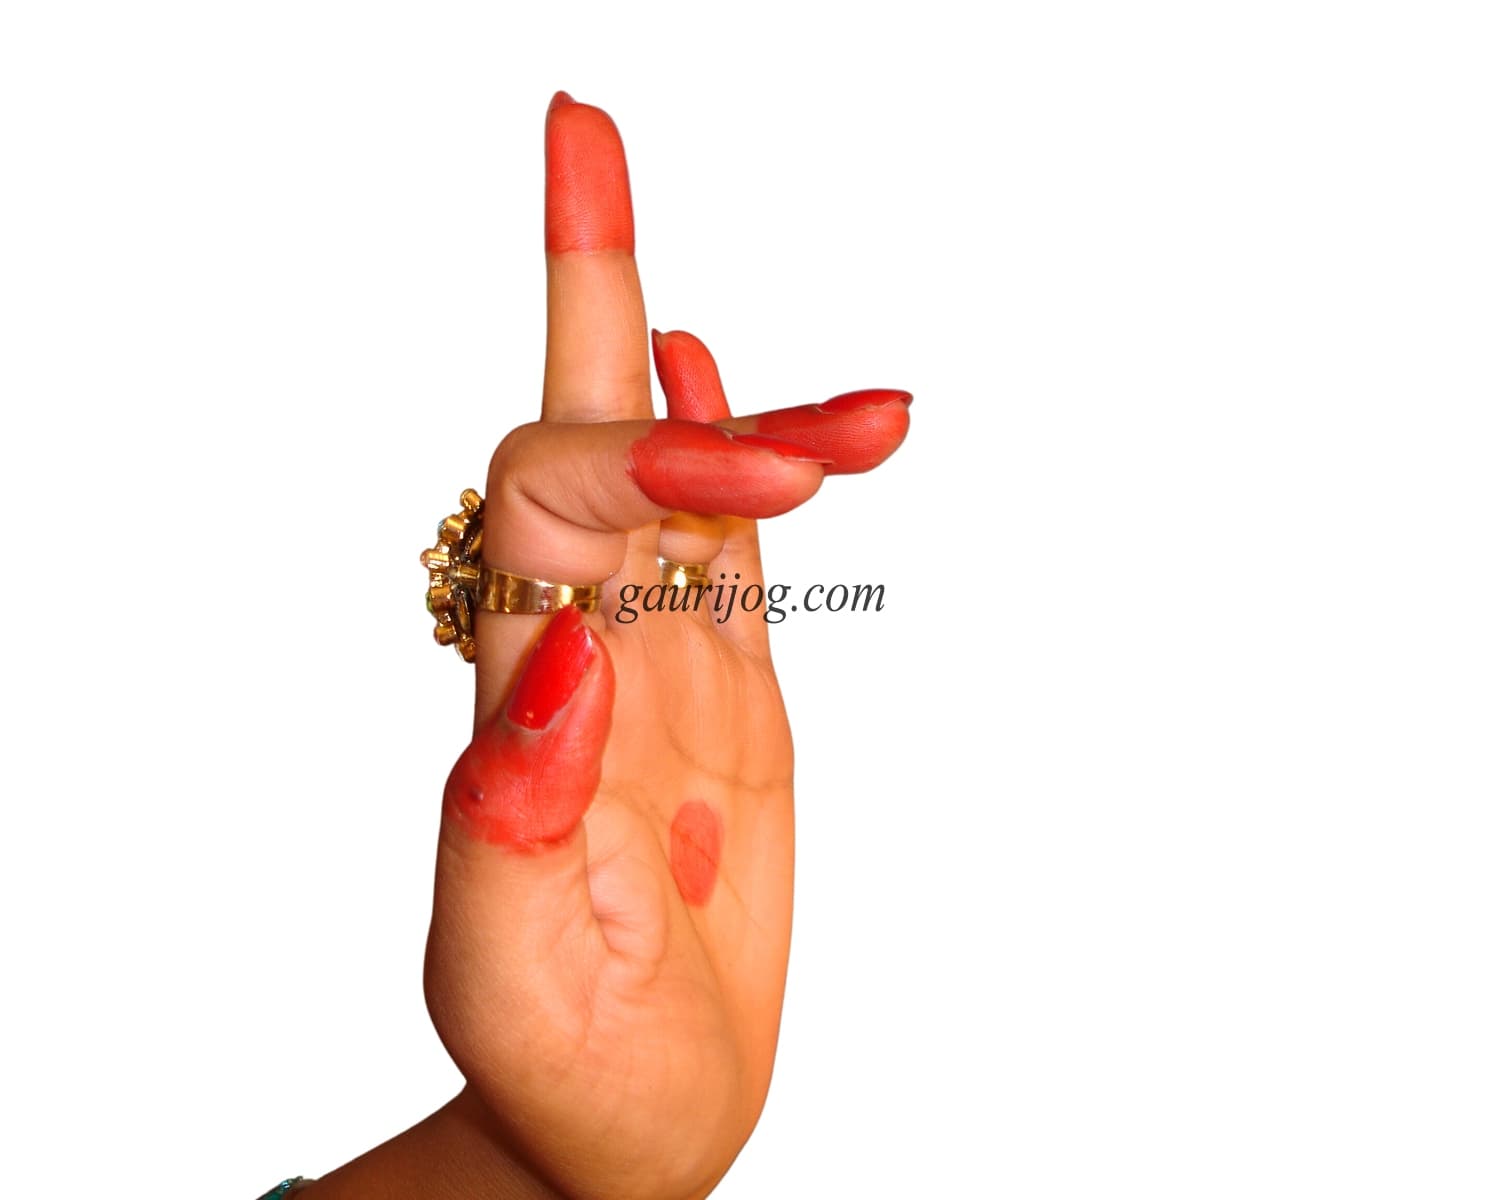 ShukaTunda Hand Gesture by Gauri Jog